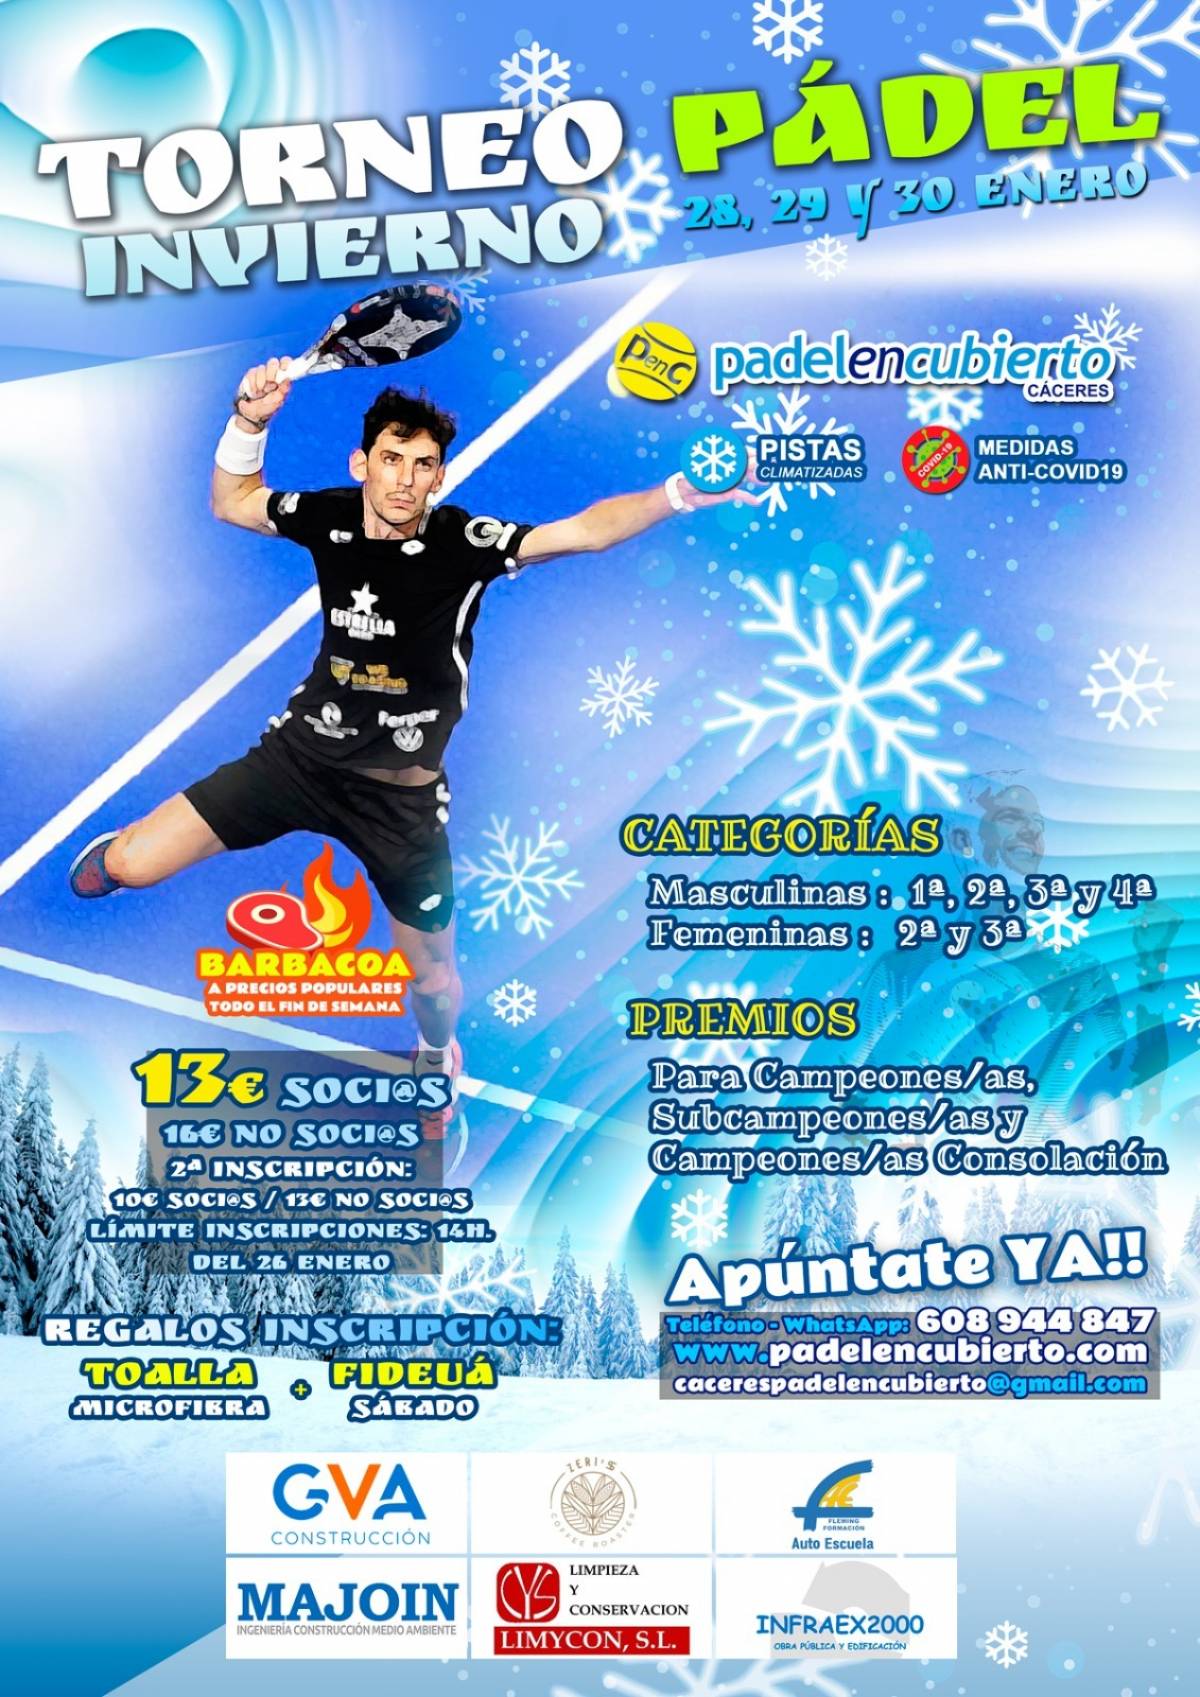 Torneo de invierno Pádel en Cubierto Cáceres 28, 29 y 30 de enero